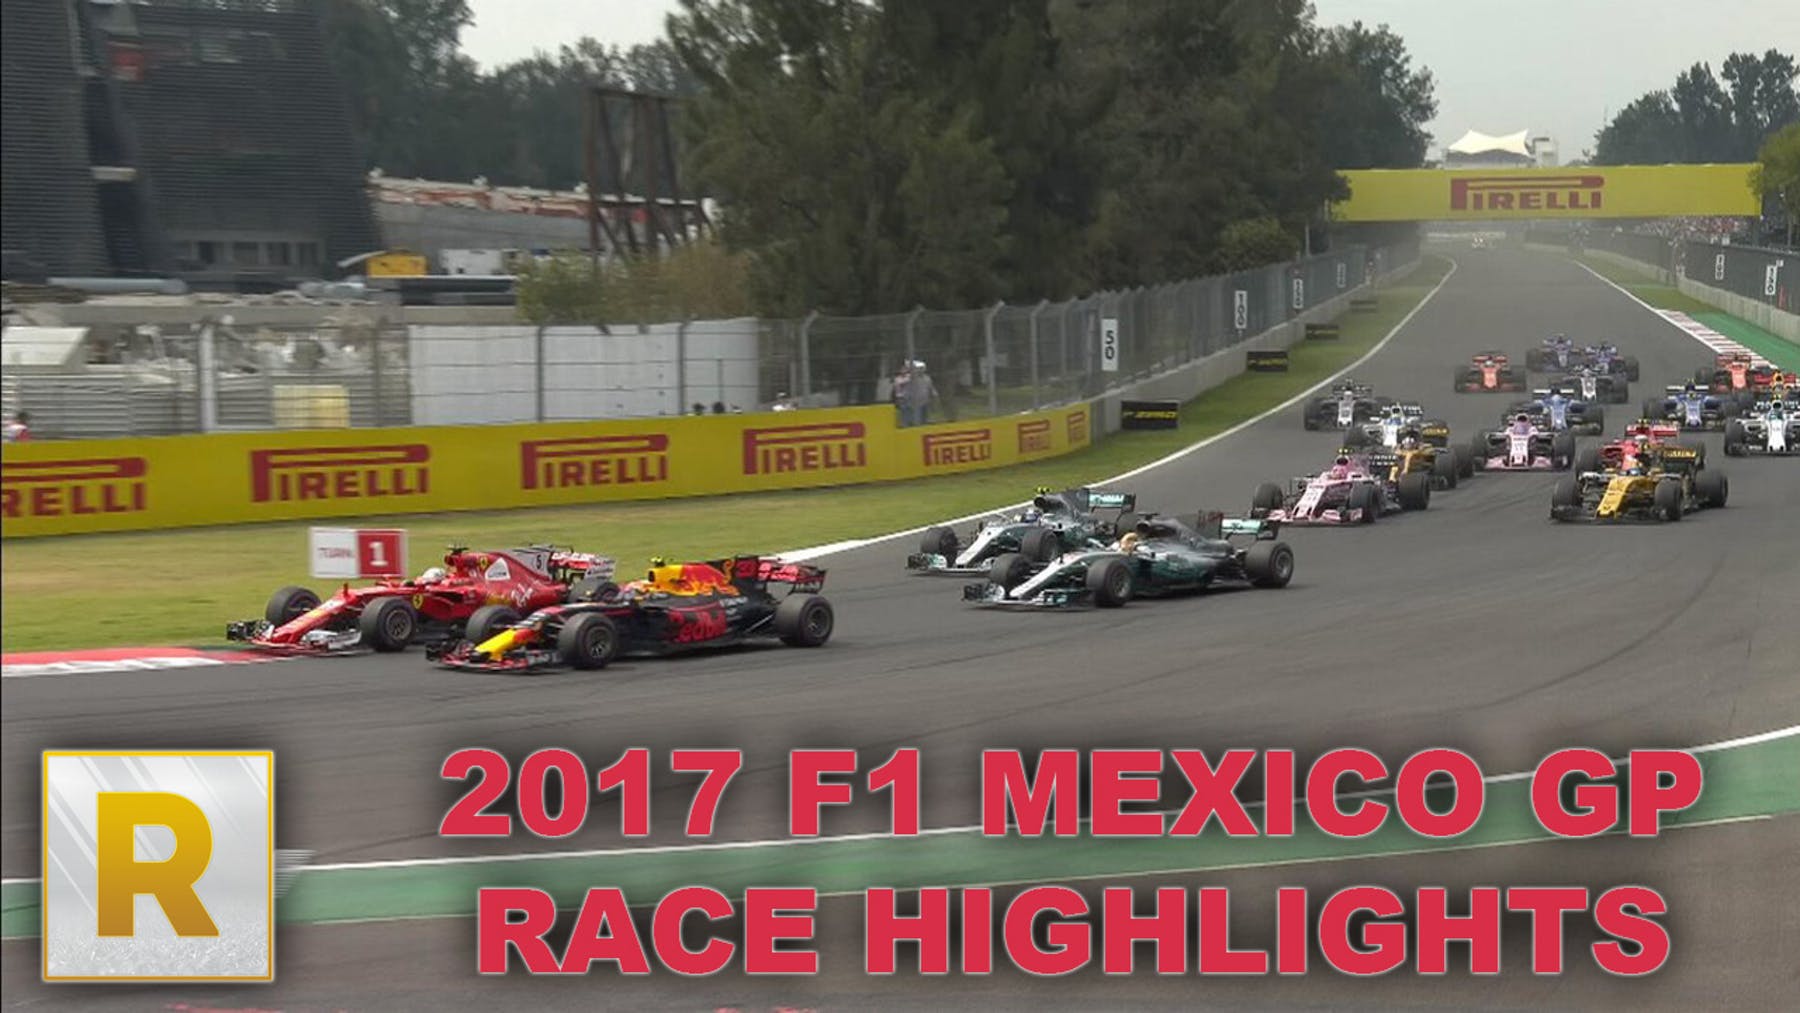 “فيديو” شاهد لقطات من سباق الجائزة الكبرى المكسيك 2017